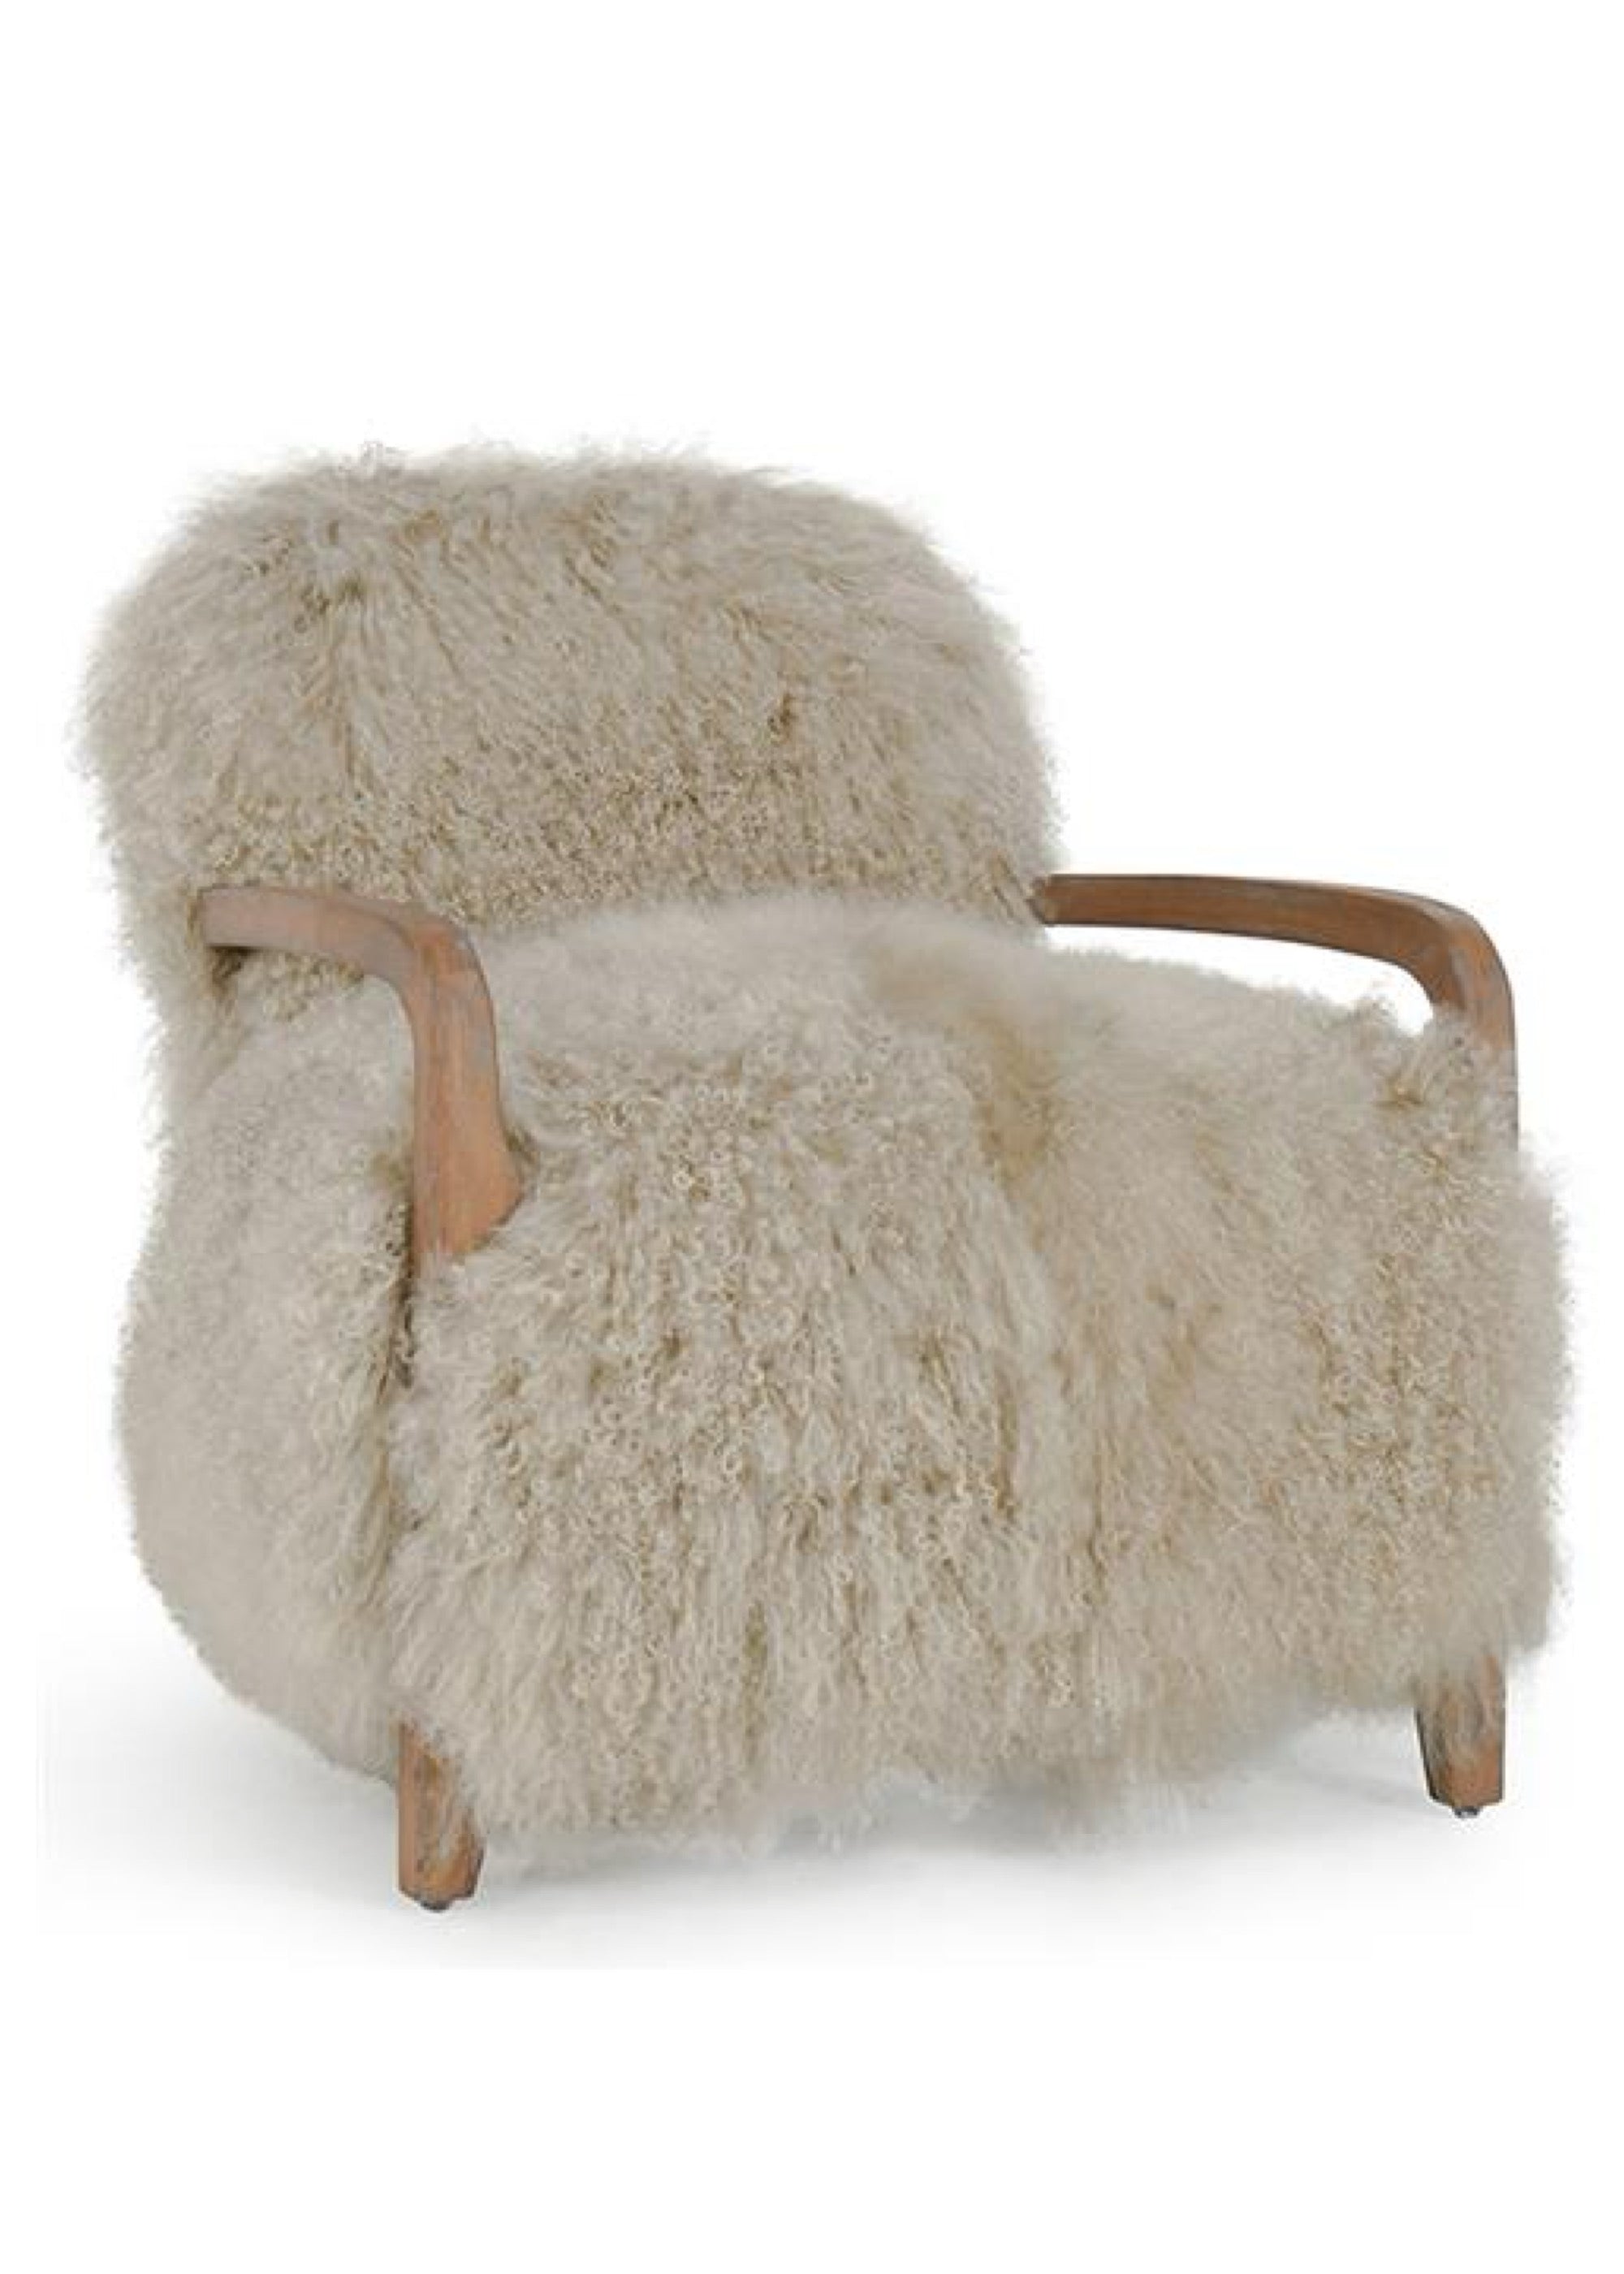 Sheep Fur Accent Chair